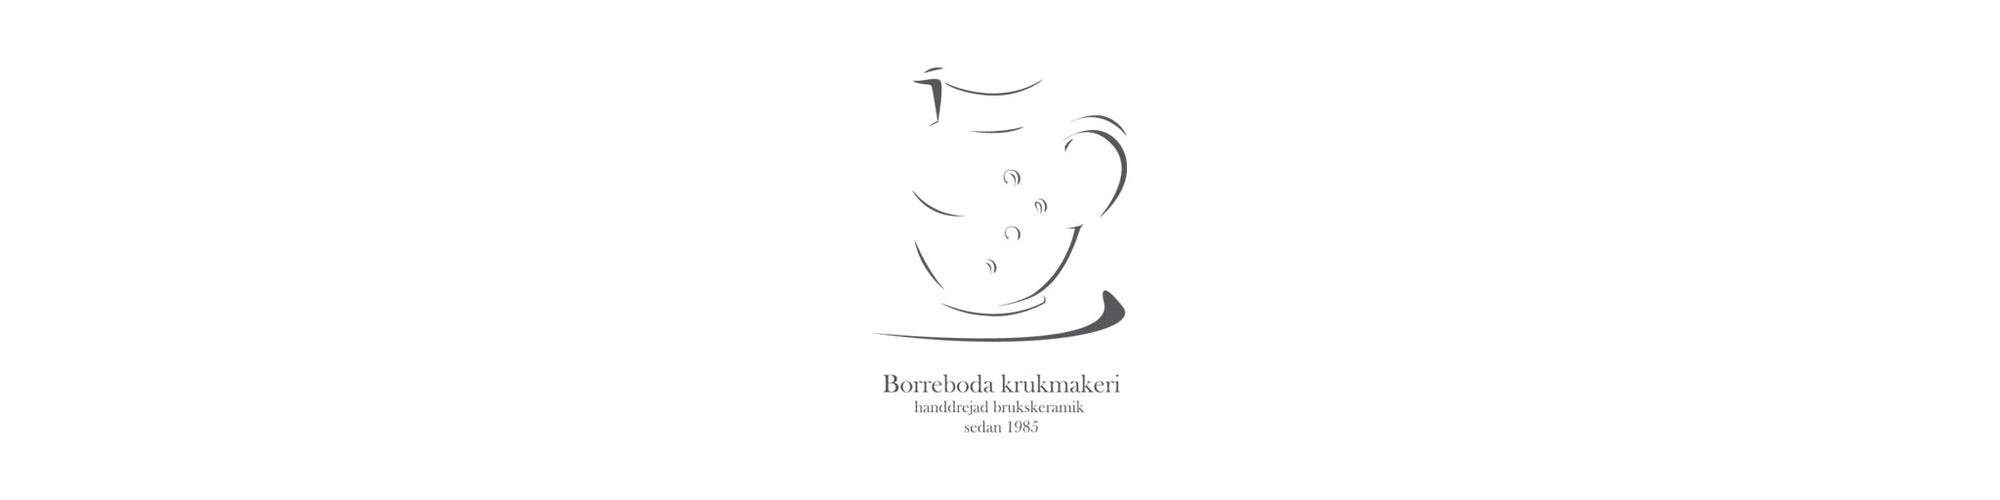 Borreboda krukmakeri - brukskeramik av Marianne Ljungström